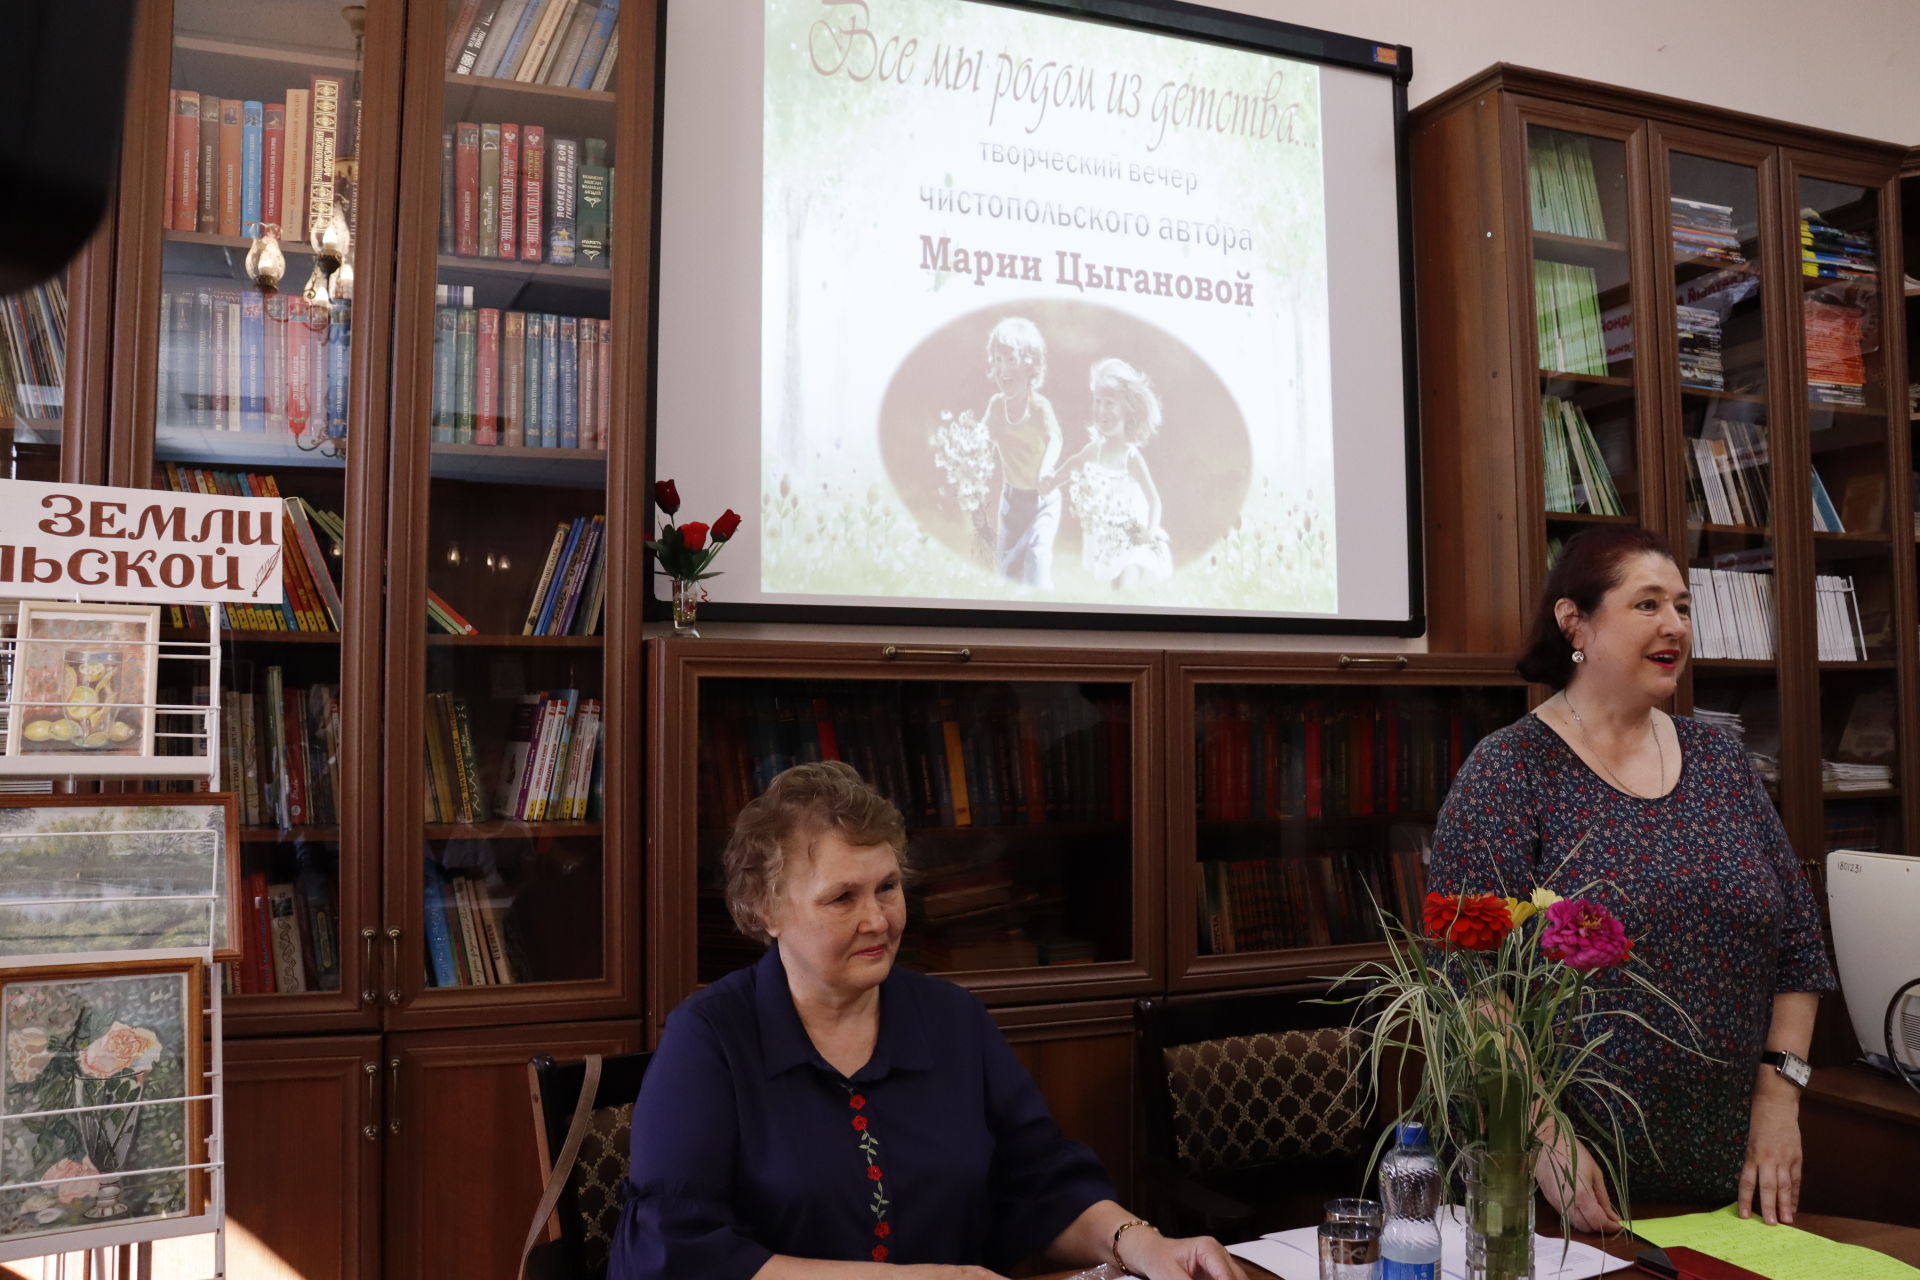 В Чистополе состоялся литературно-музыкальный вечер автора Марии Цыгановой